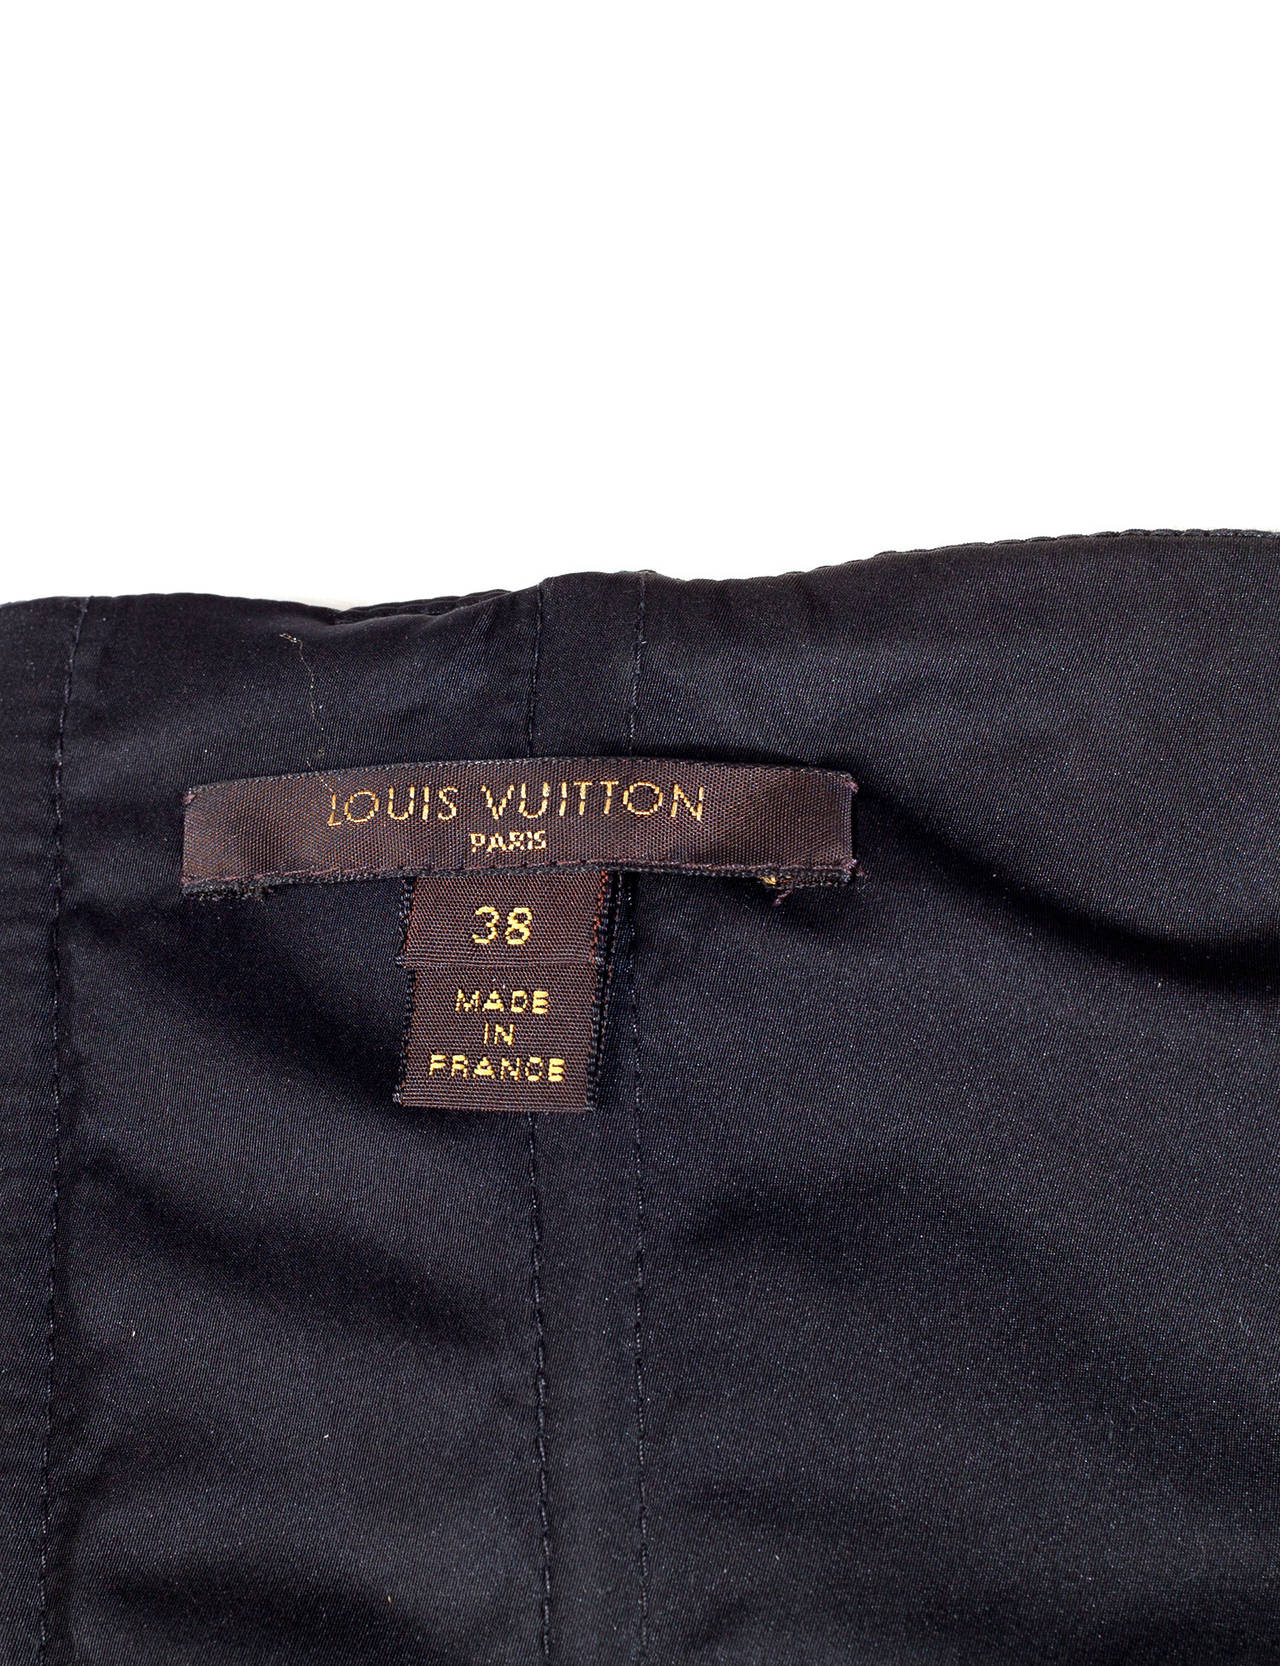 Louis Vuitton by Marc Jacobs Black Bustier dress, Sz. S 3